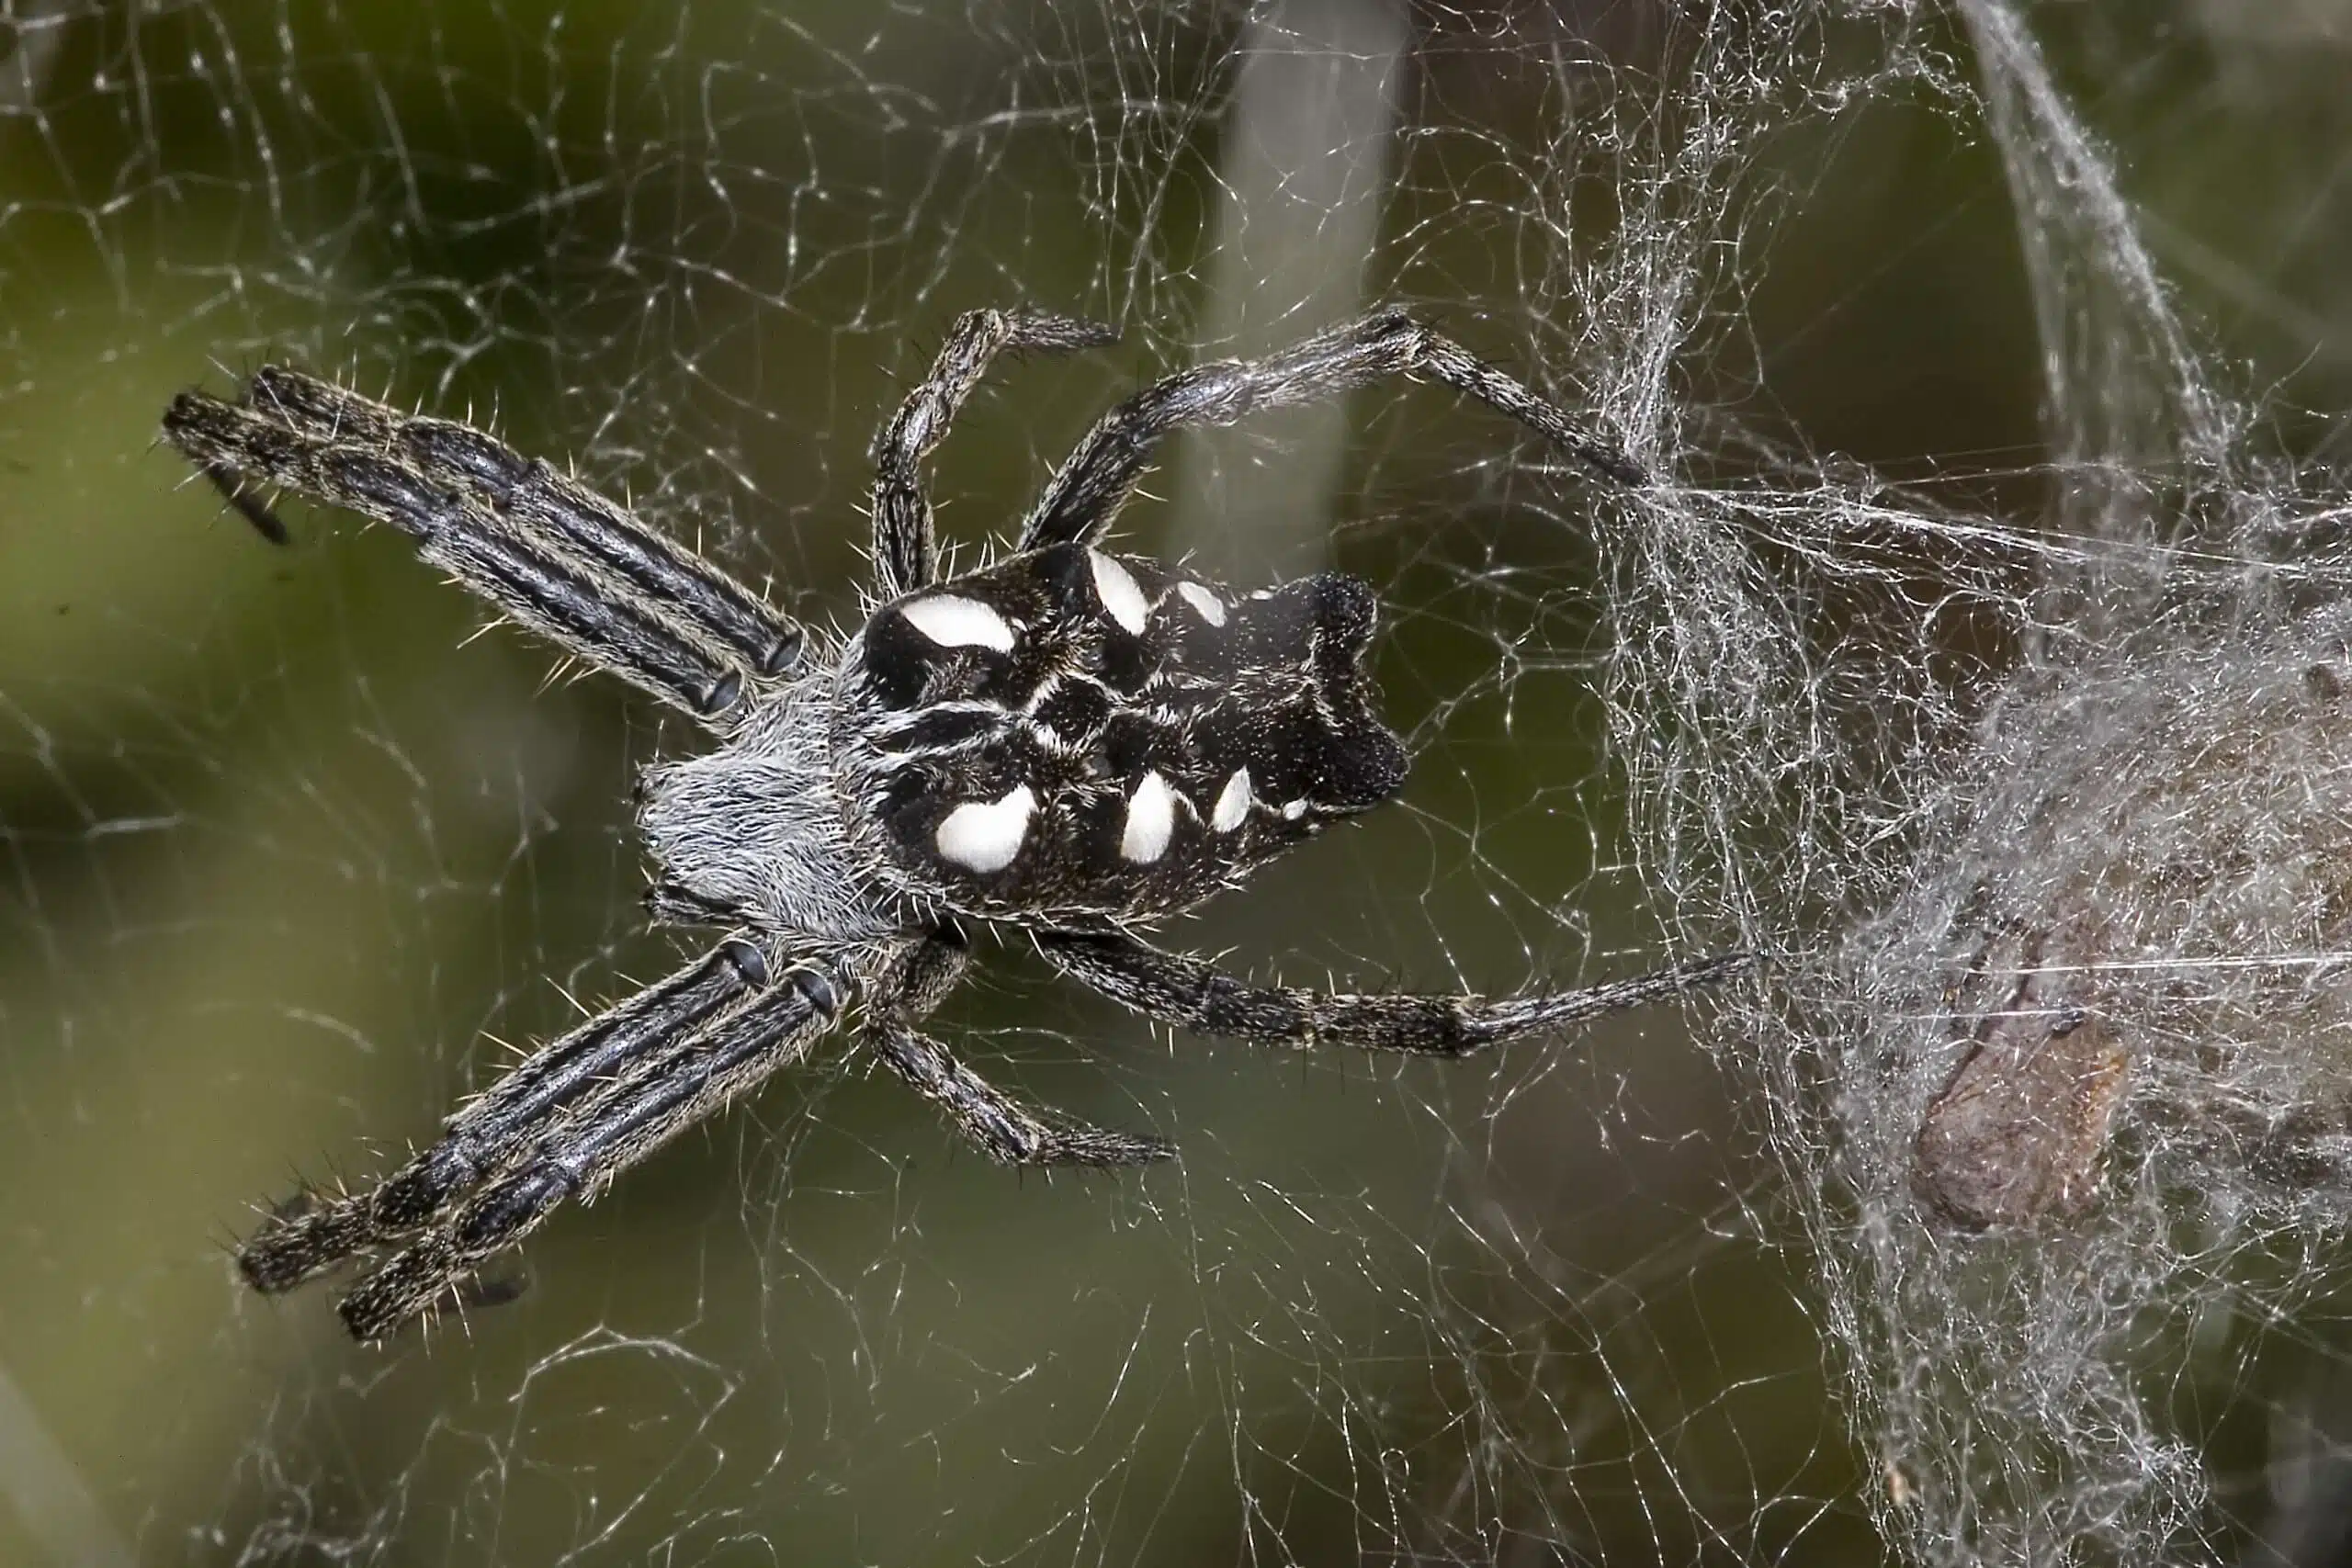 העכבישים הללו חיים ב"קומונות" שבעזרתן הם מייצרים רשתות קורים גדולות – שלוכדות את המזיקים השונים. צילום: Olaf Leillinger, CC BY-SA 2.5